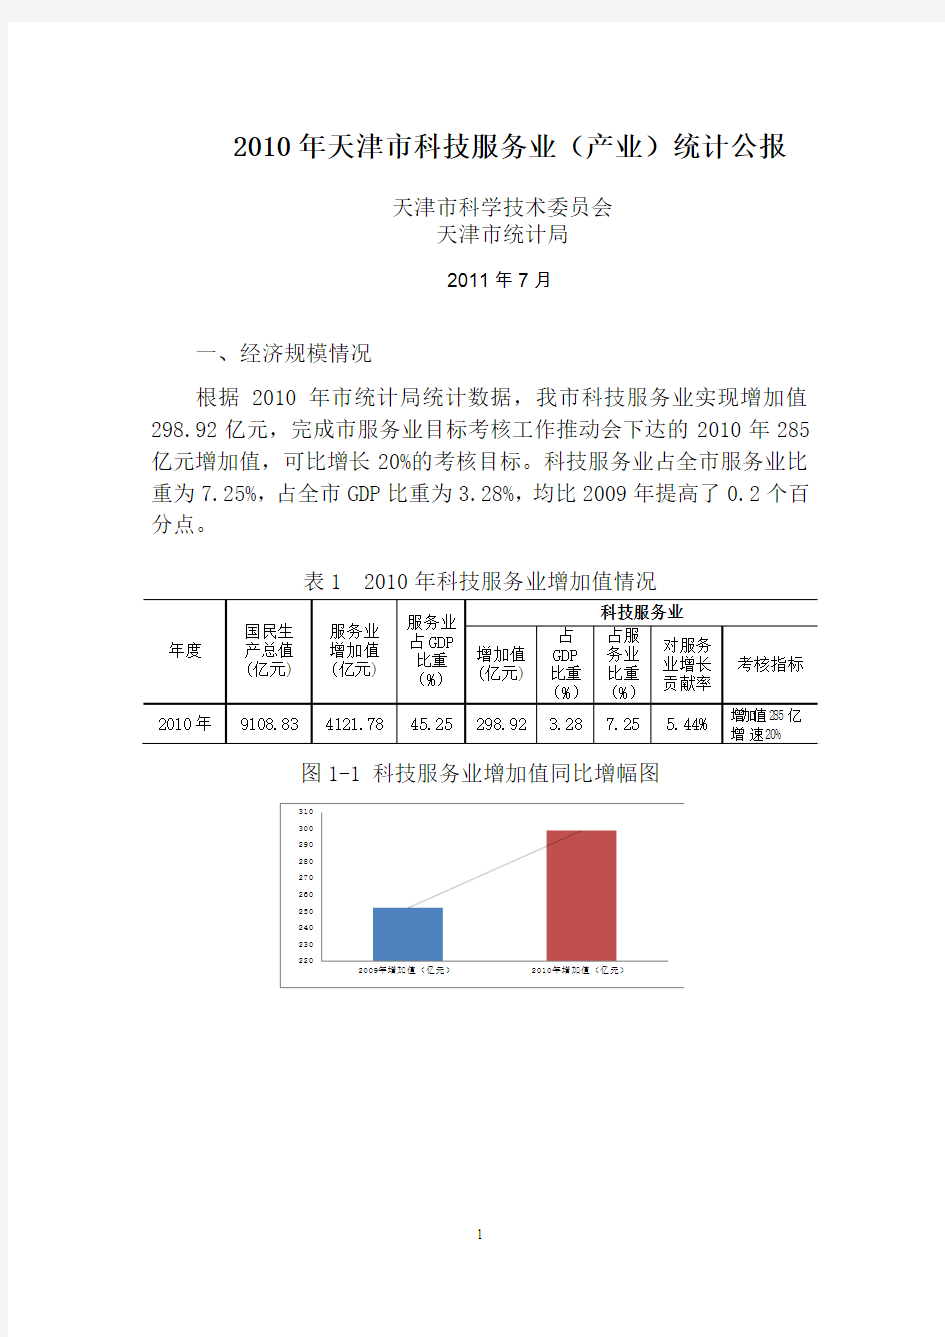 2007年天津市国民经济和社会发展统计公报